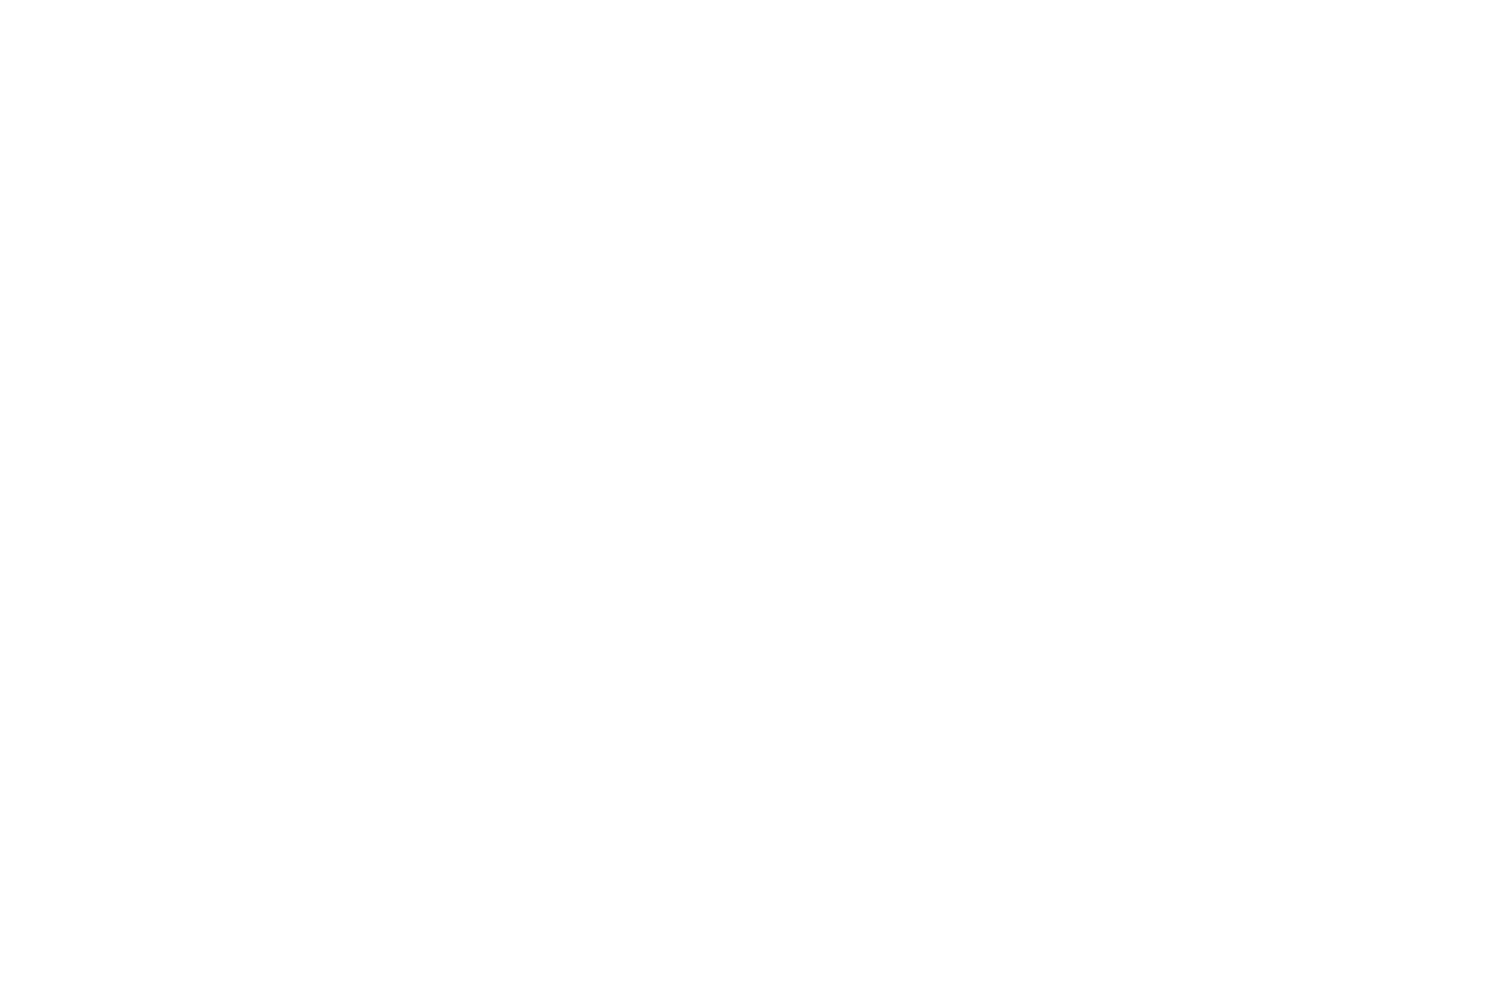 Rumney Guggenheim Gallery